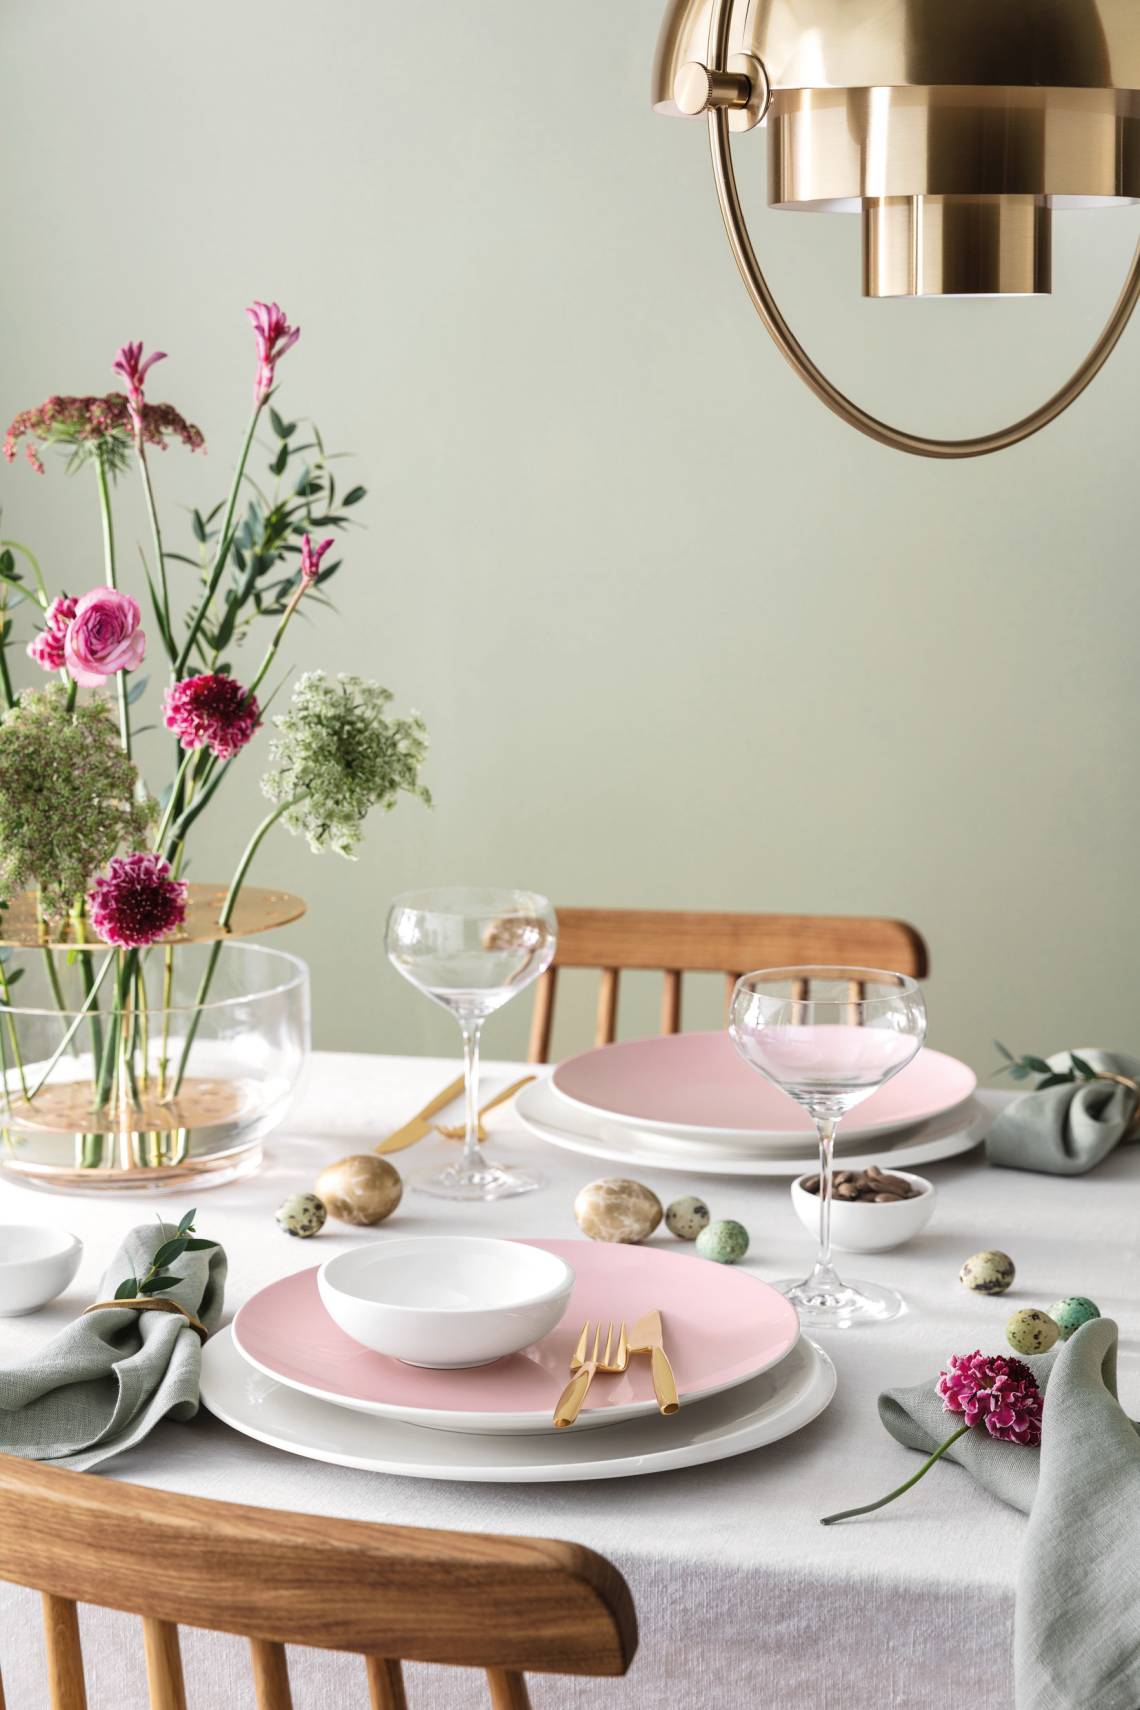 Villeroy & Boch - Romantische Tischdekoration mit Rose Garden